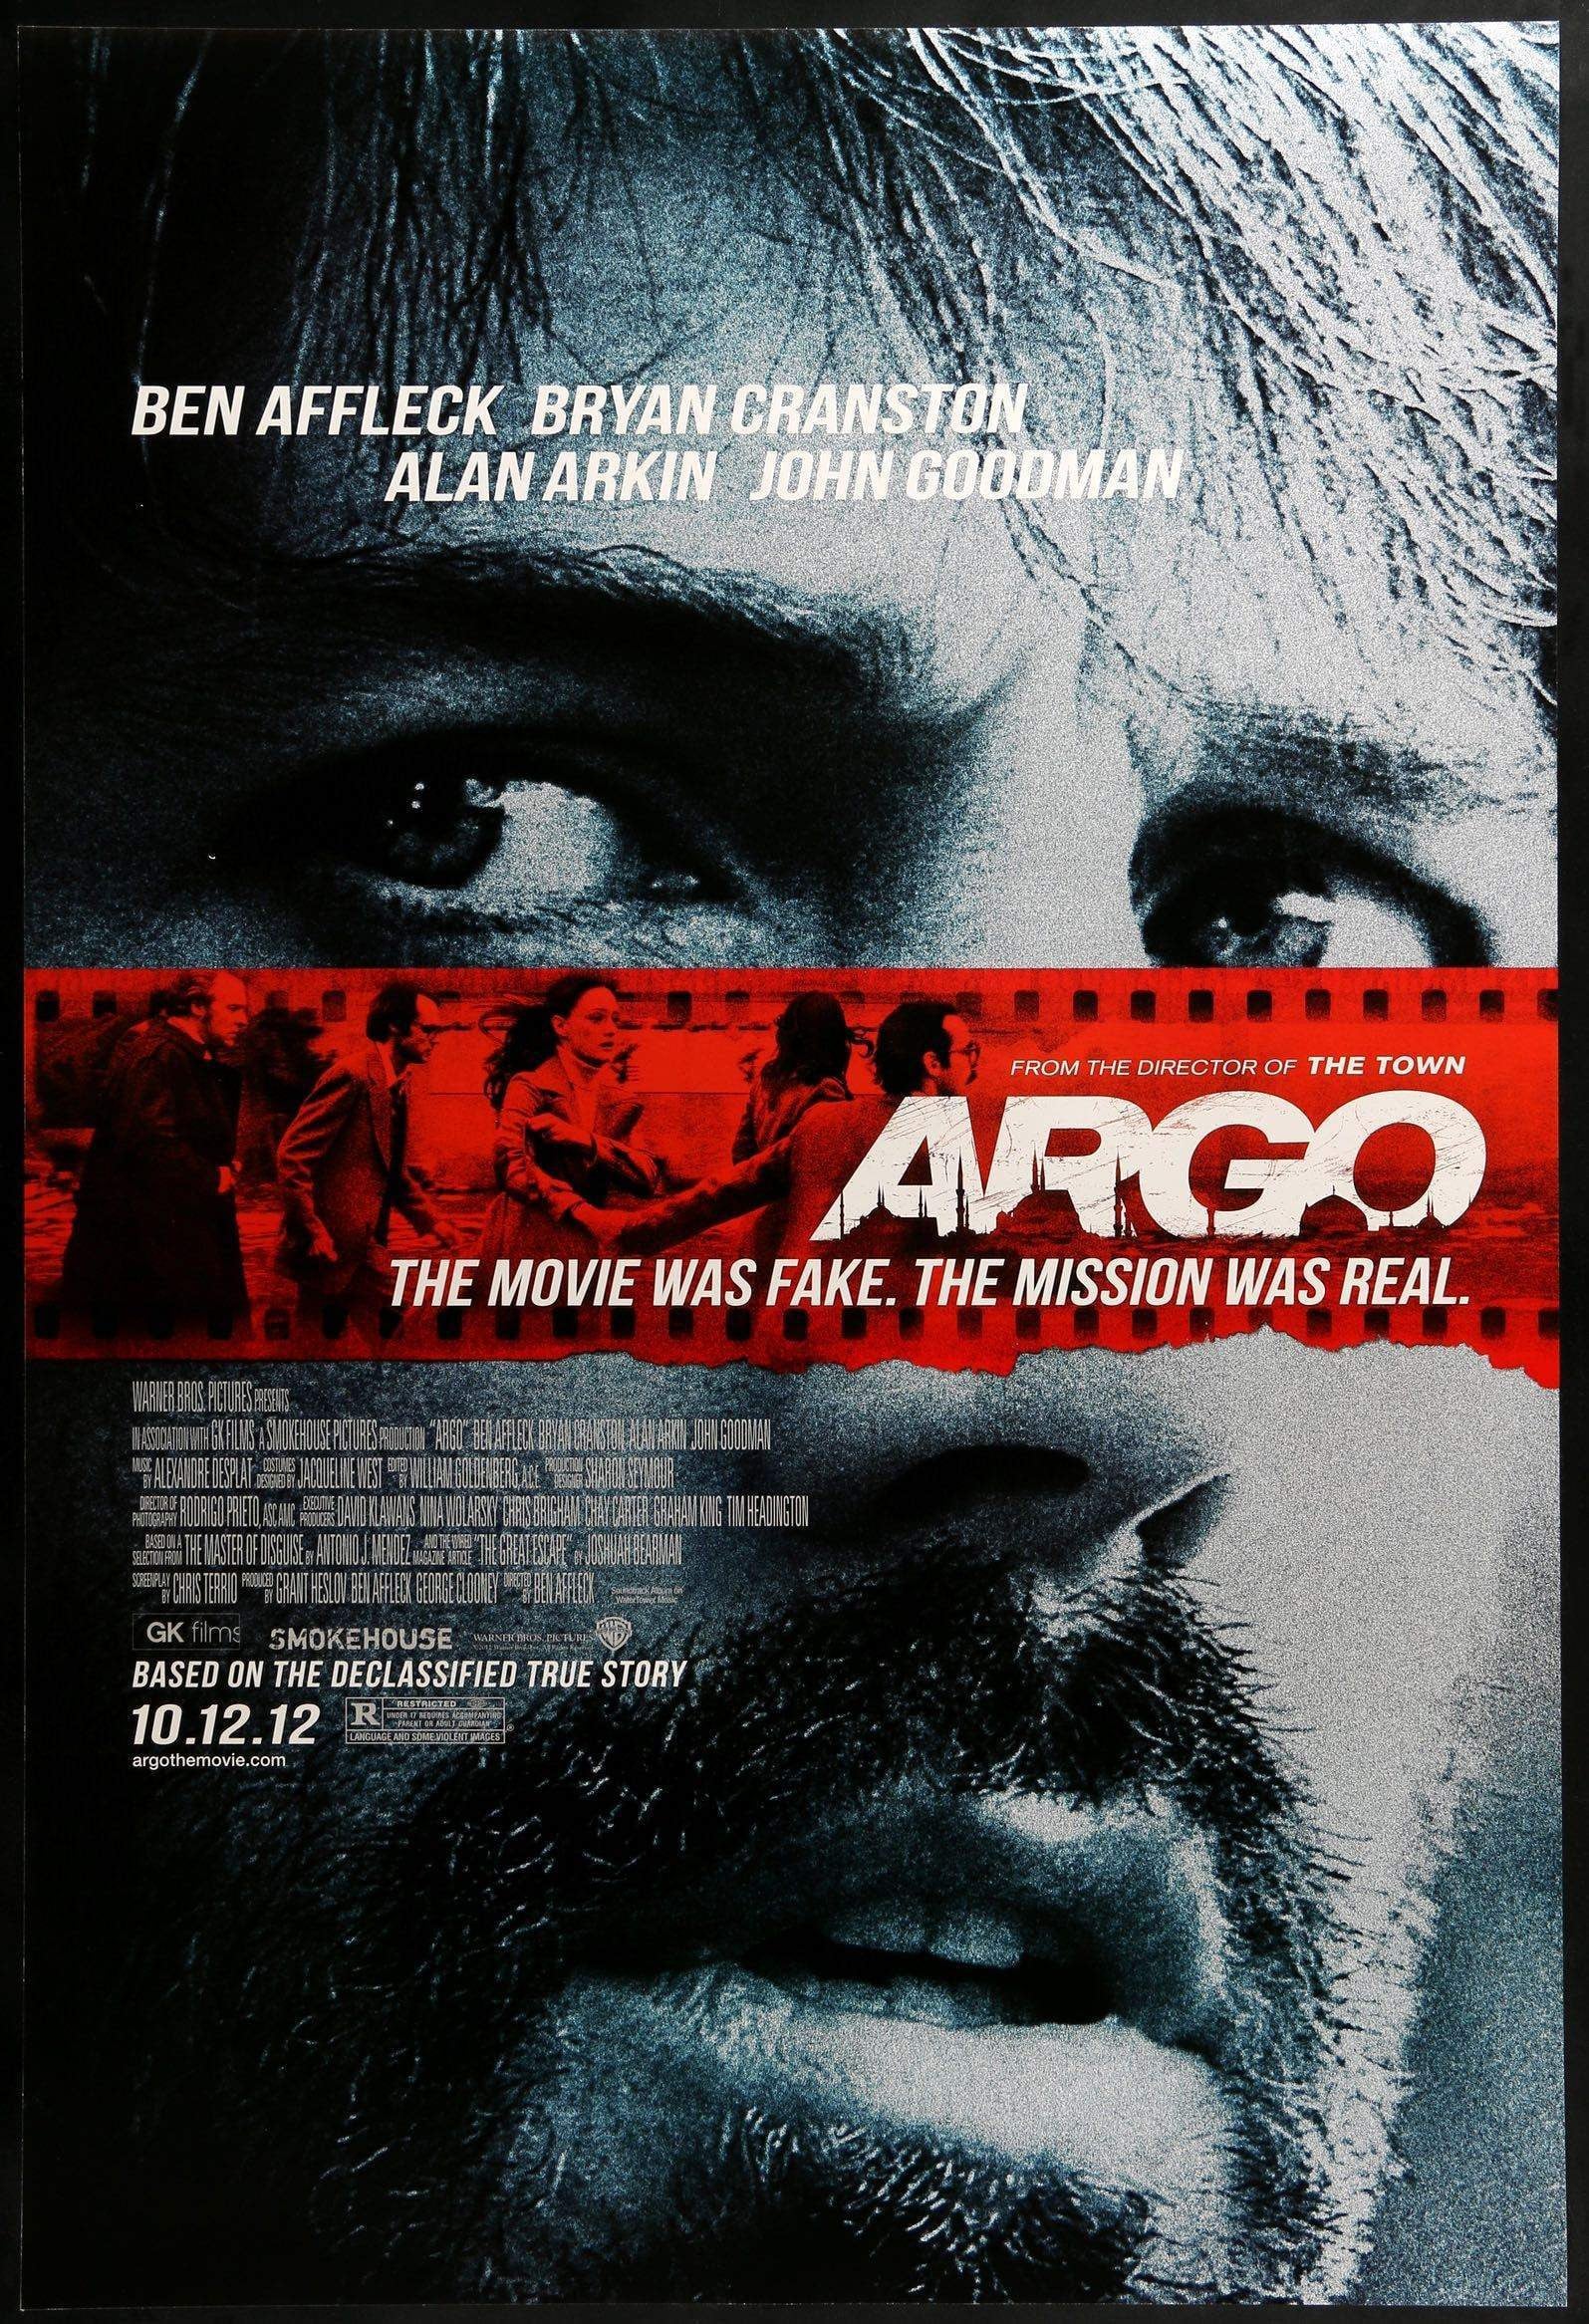 argo poster